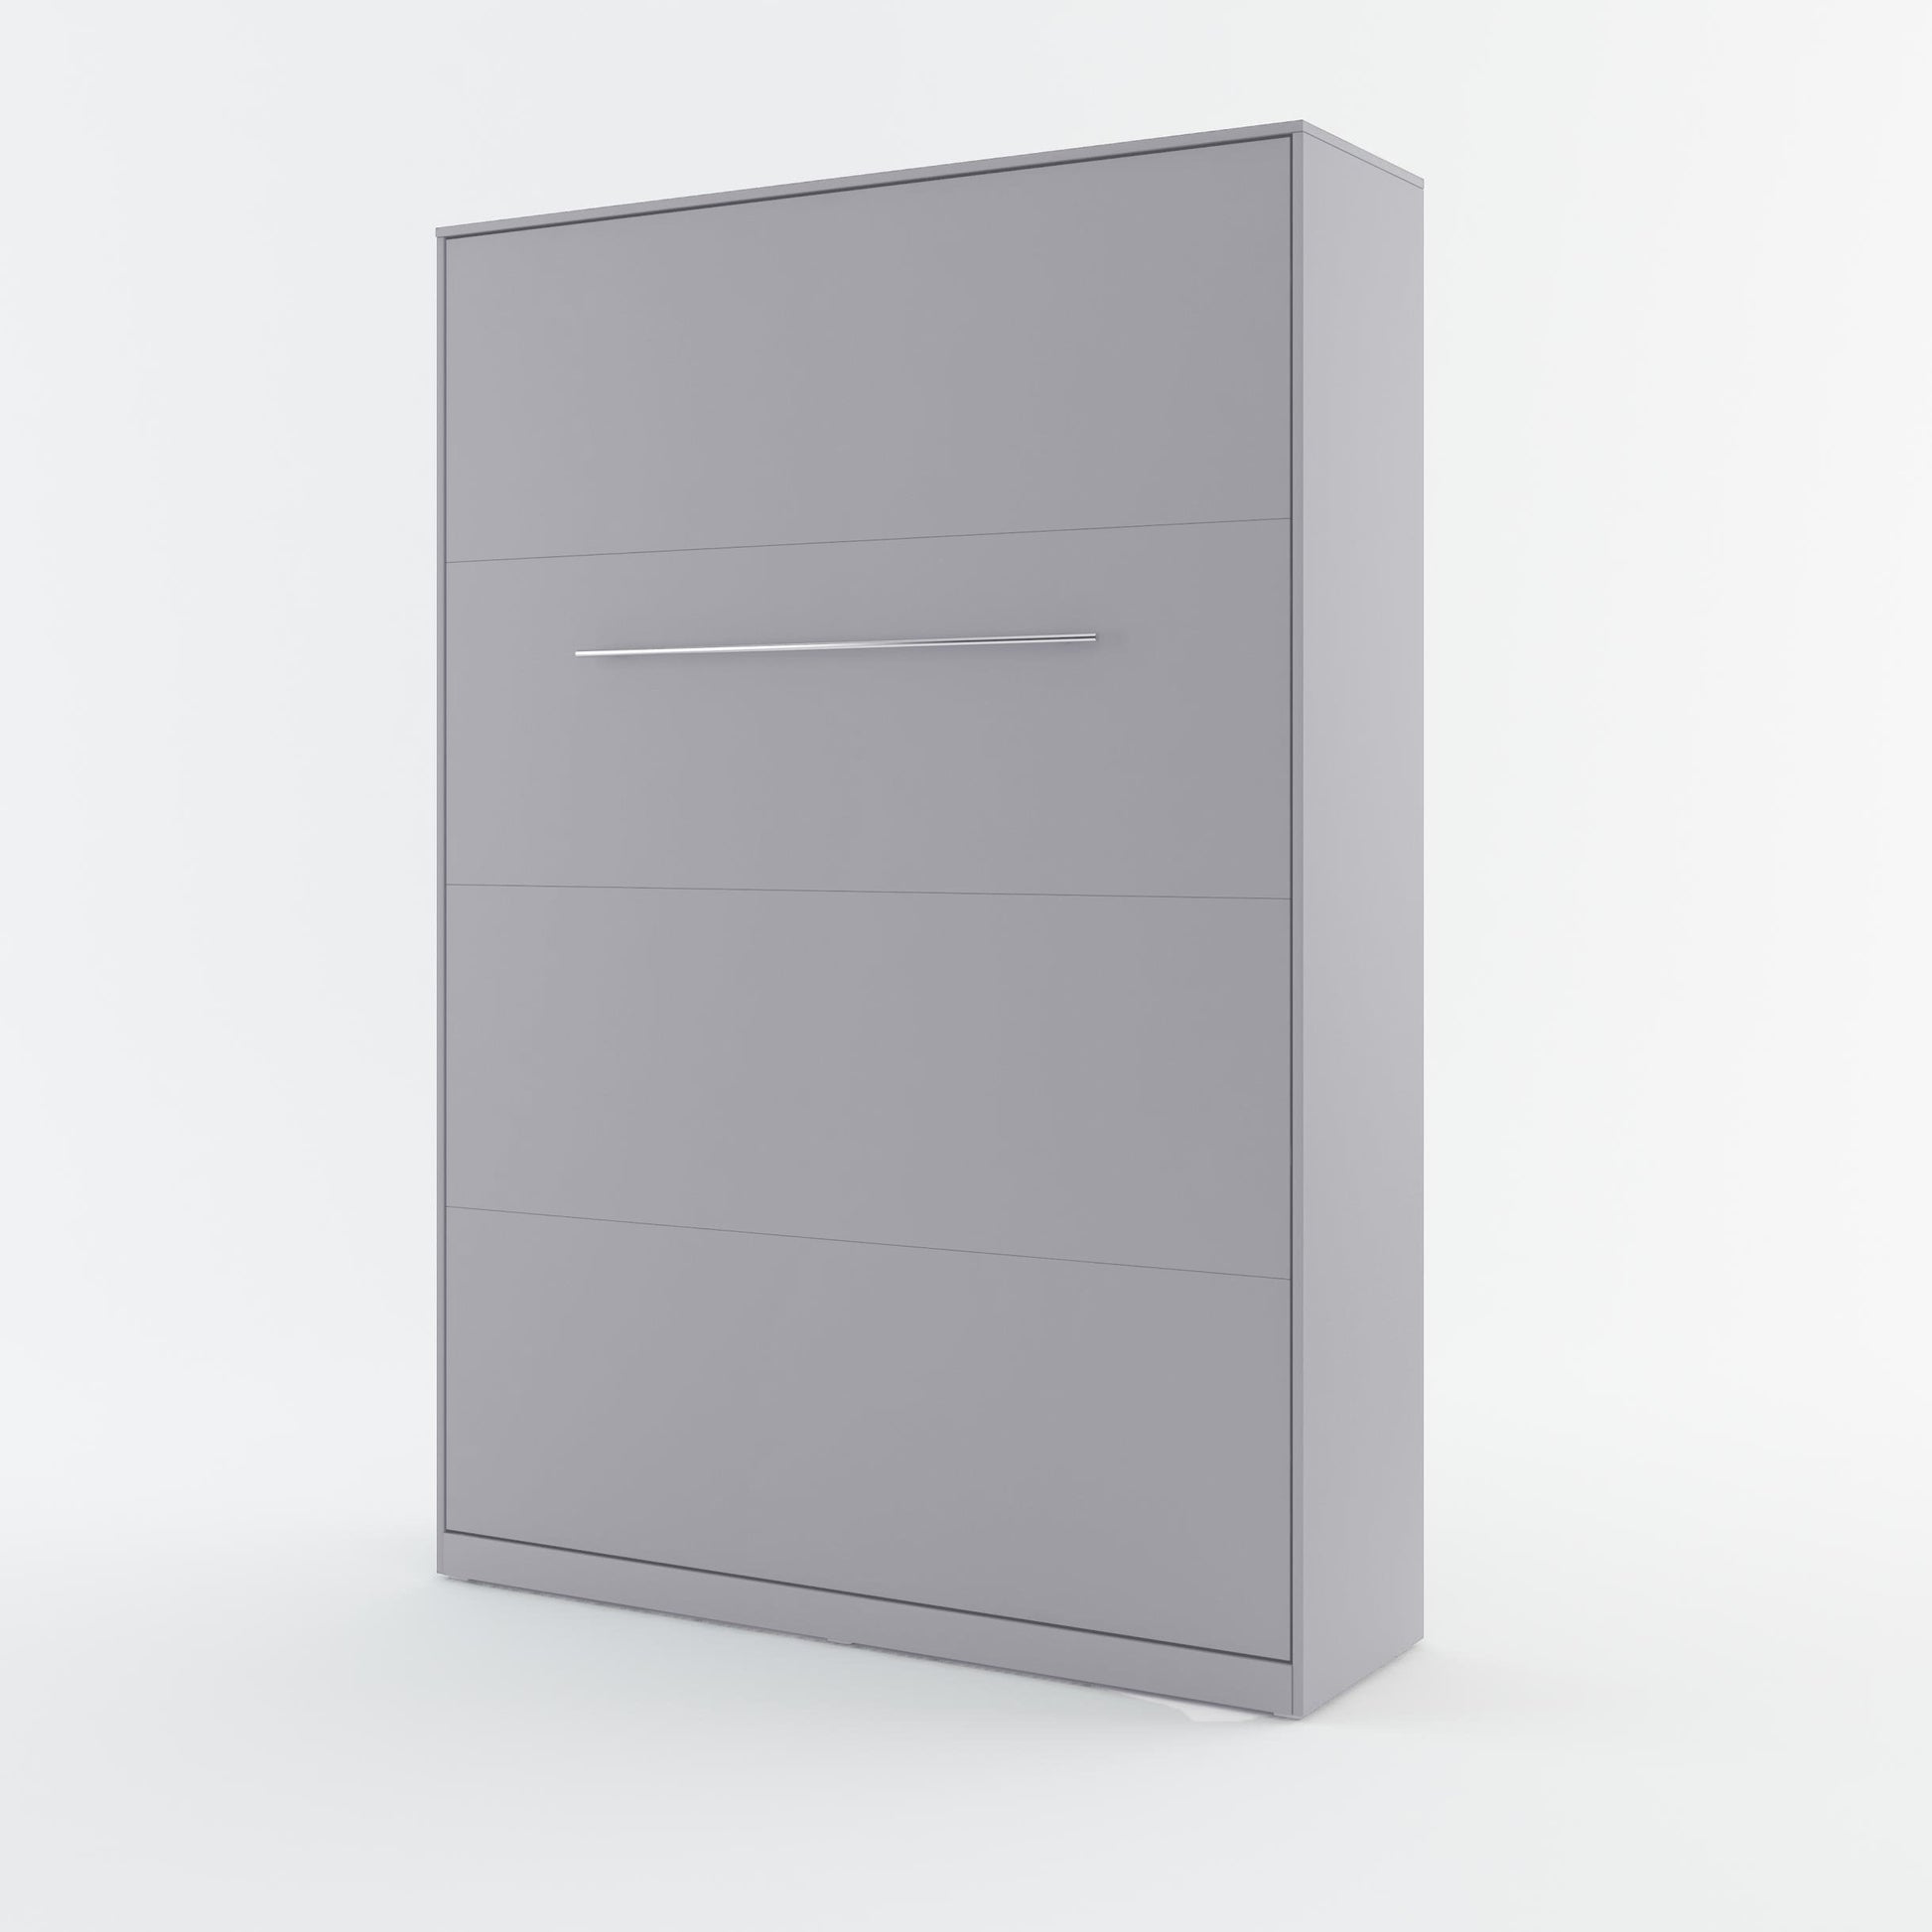 CP-03 Vertical Wall Bed Concept 90cm Grey Matt Wall Bed 